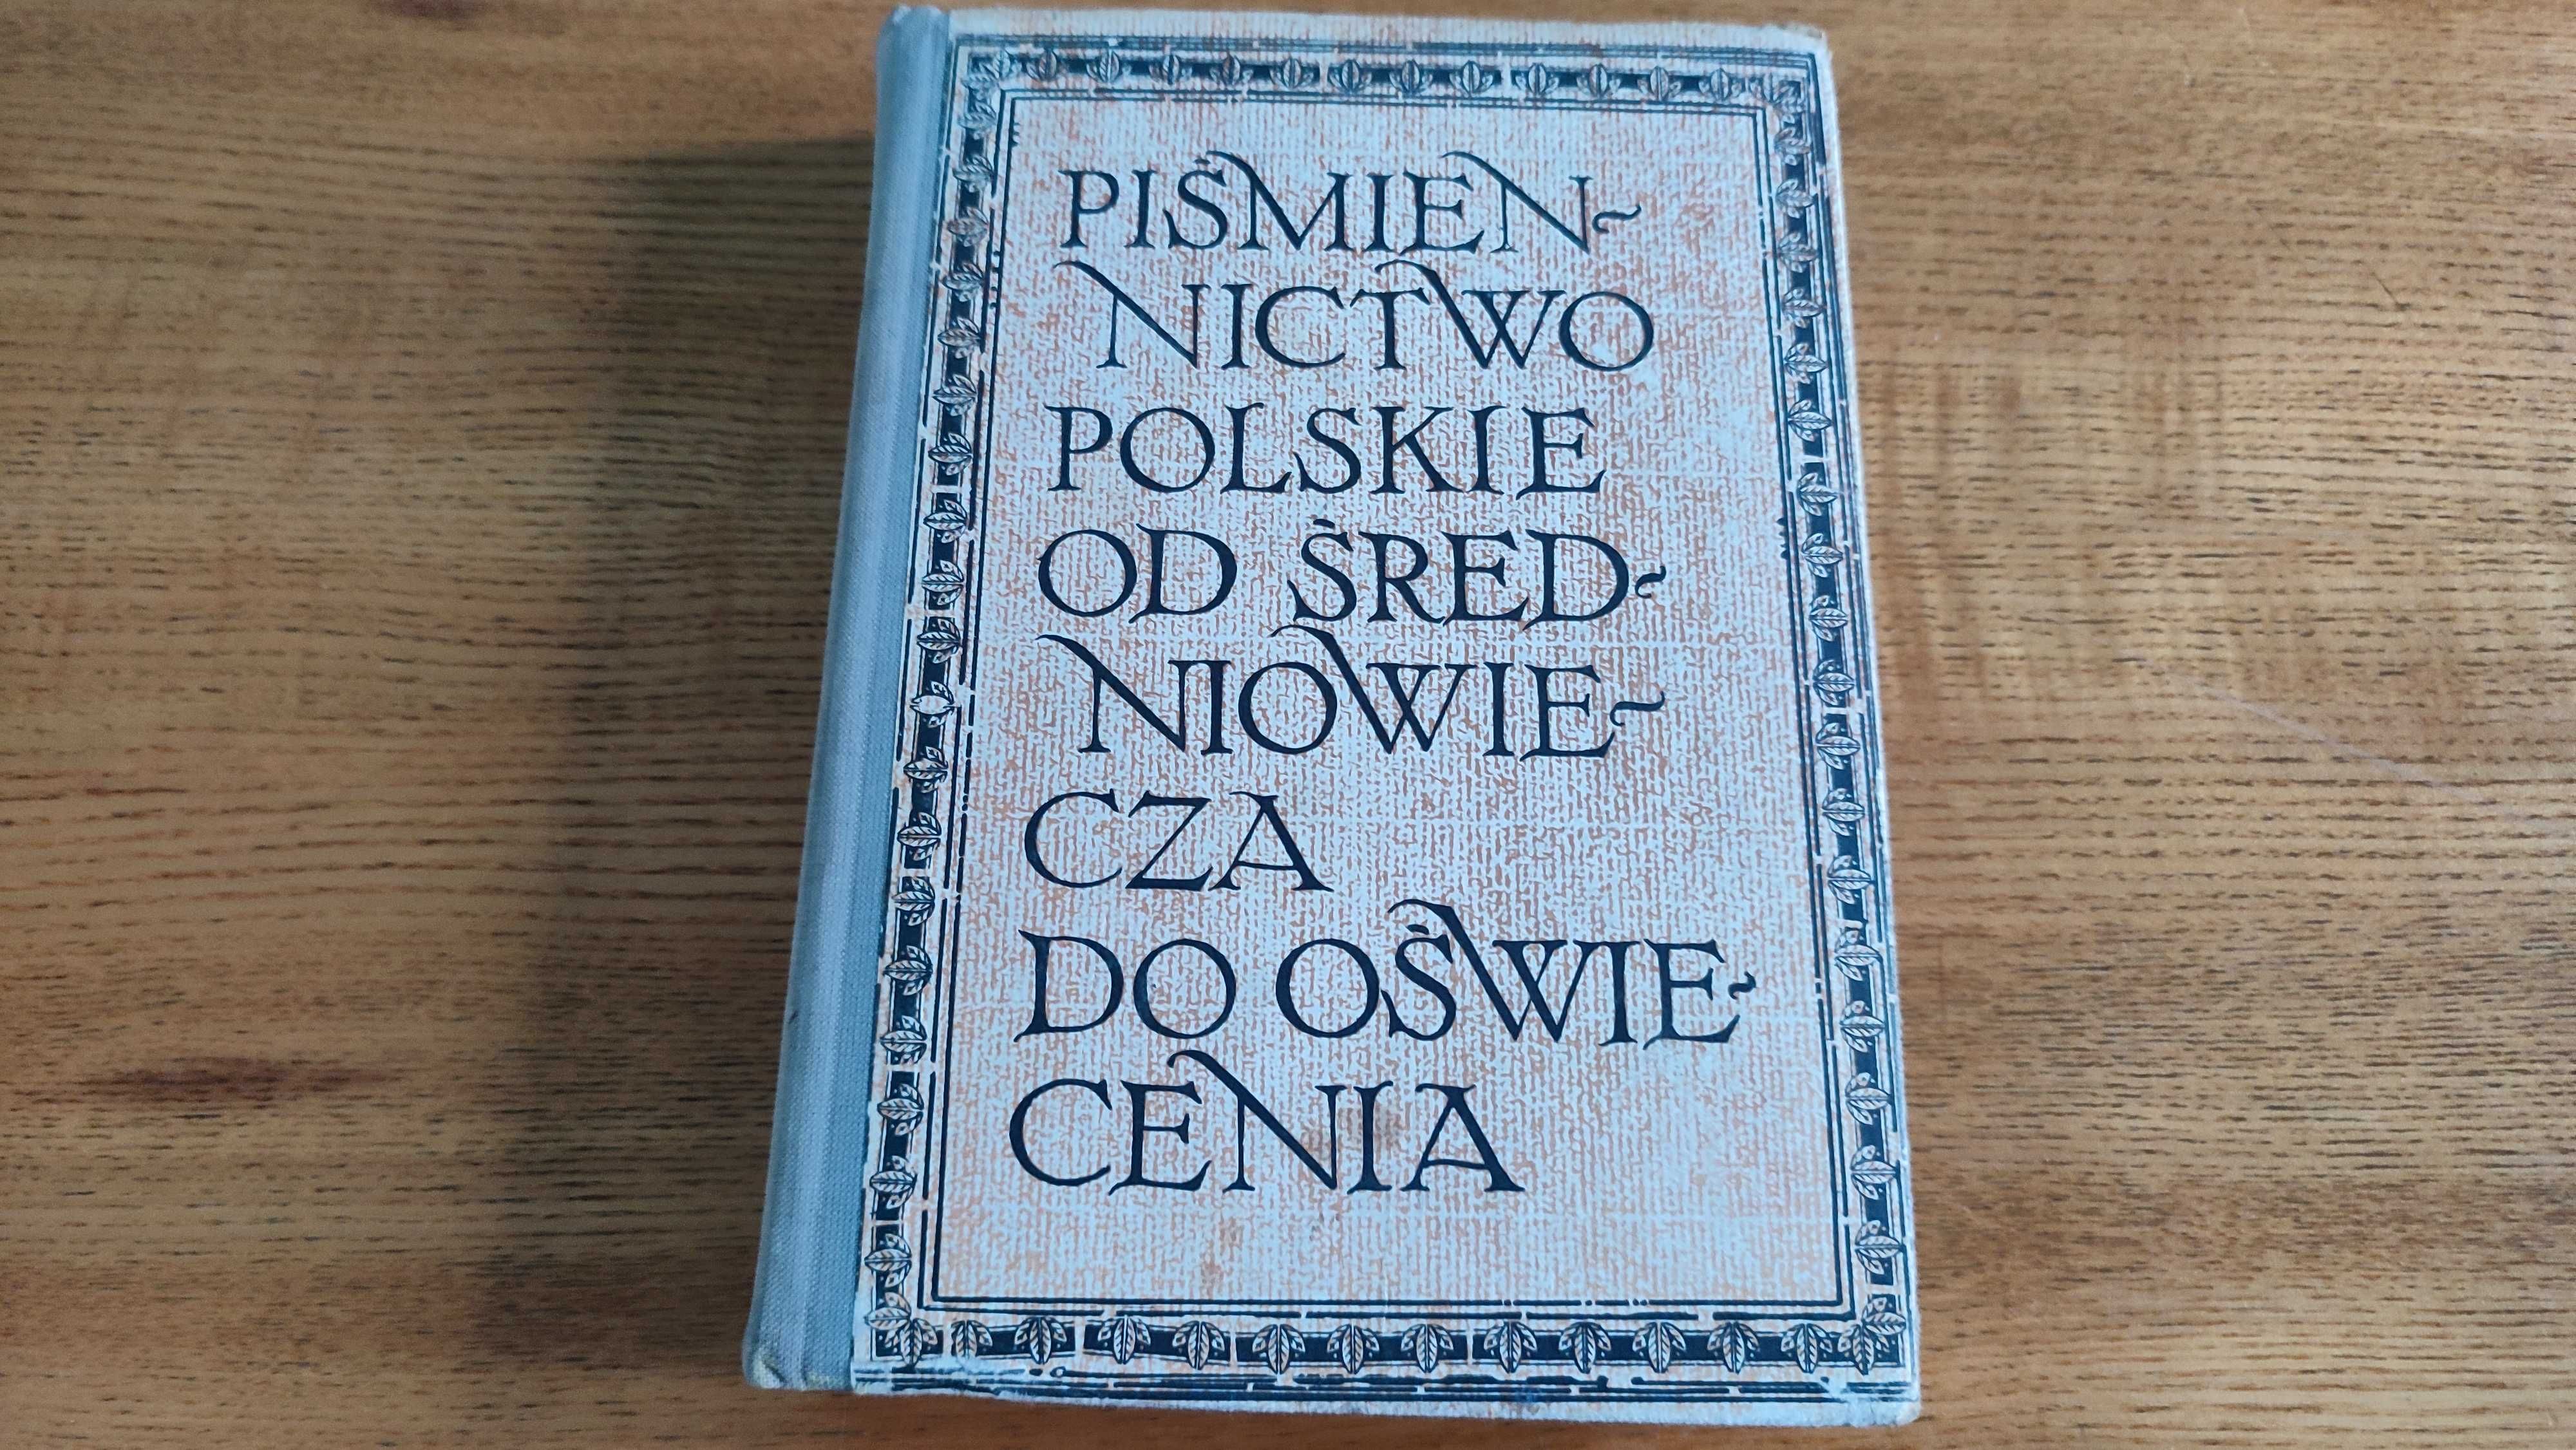 Piśmiennictwo polskie od średniowiecza do oświecenia